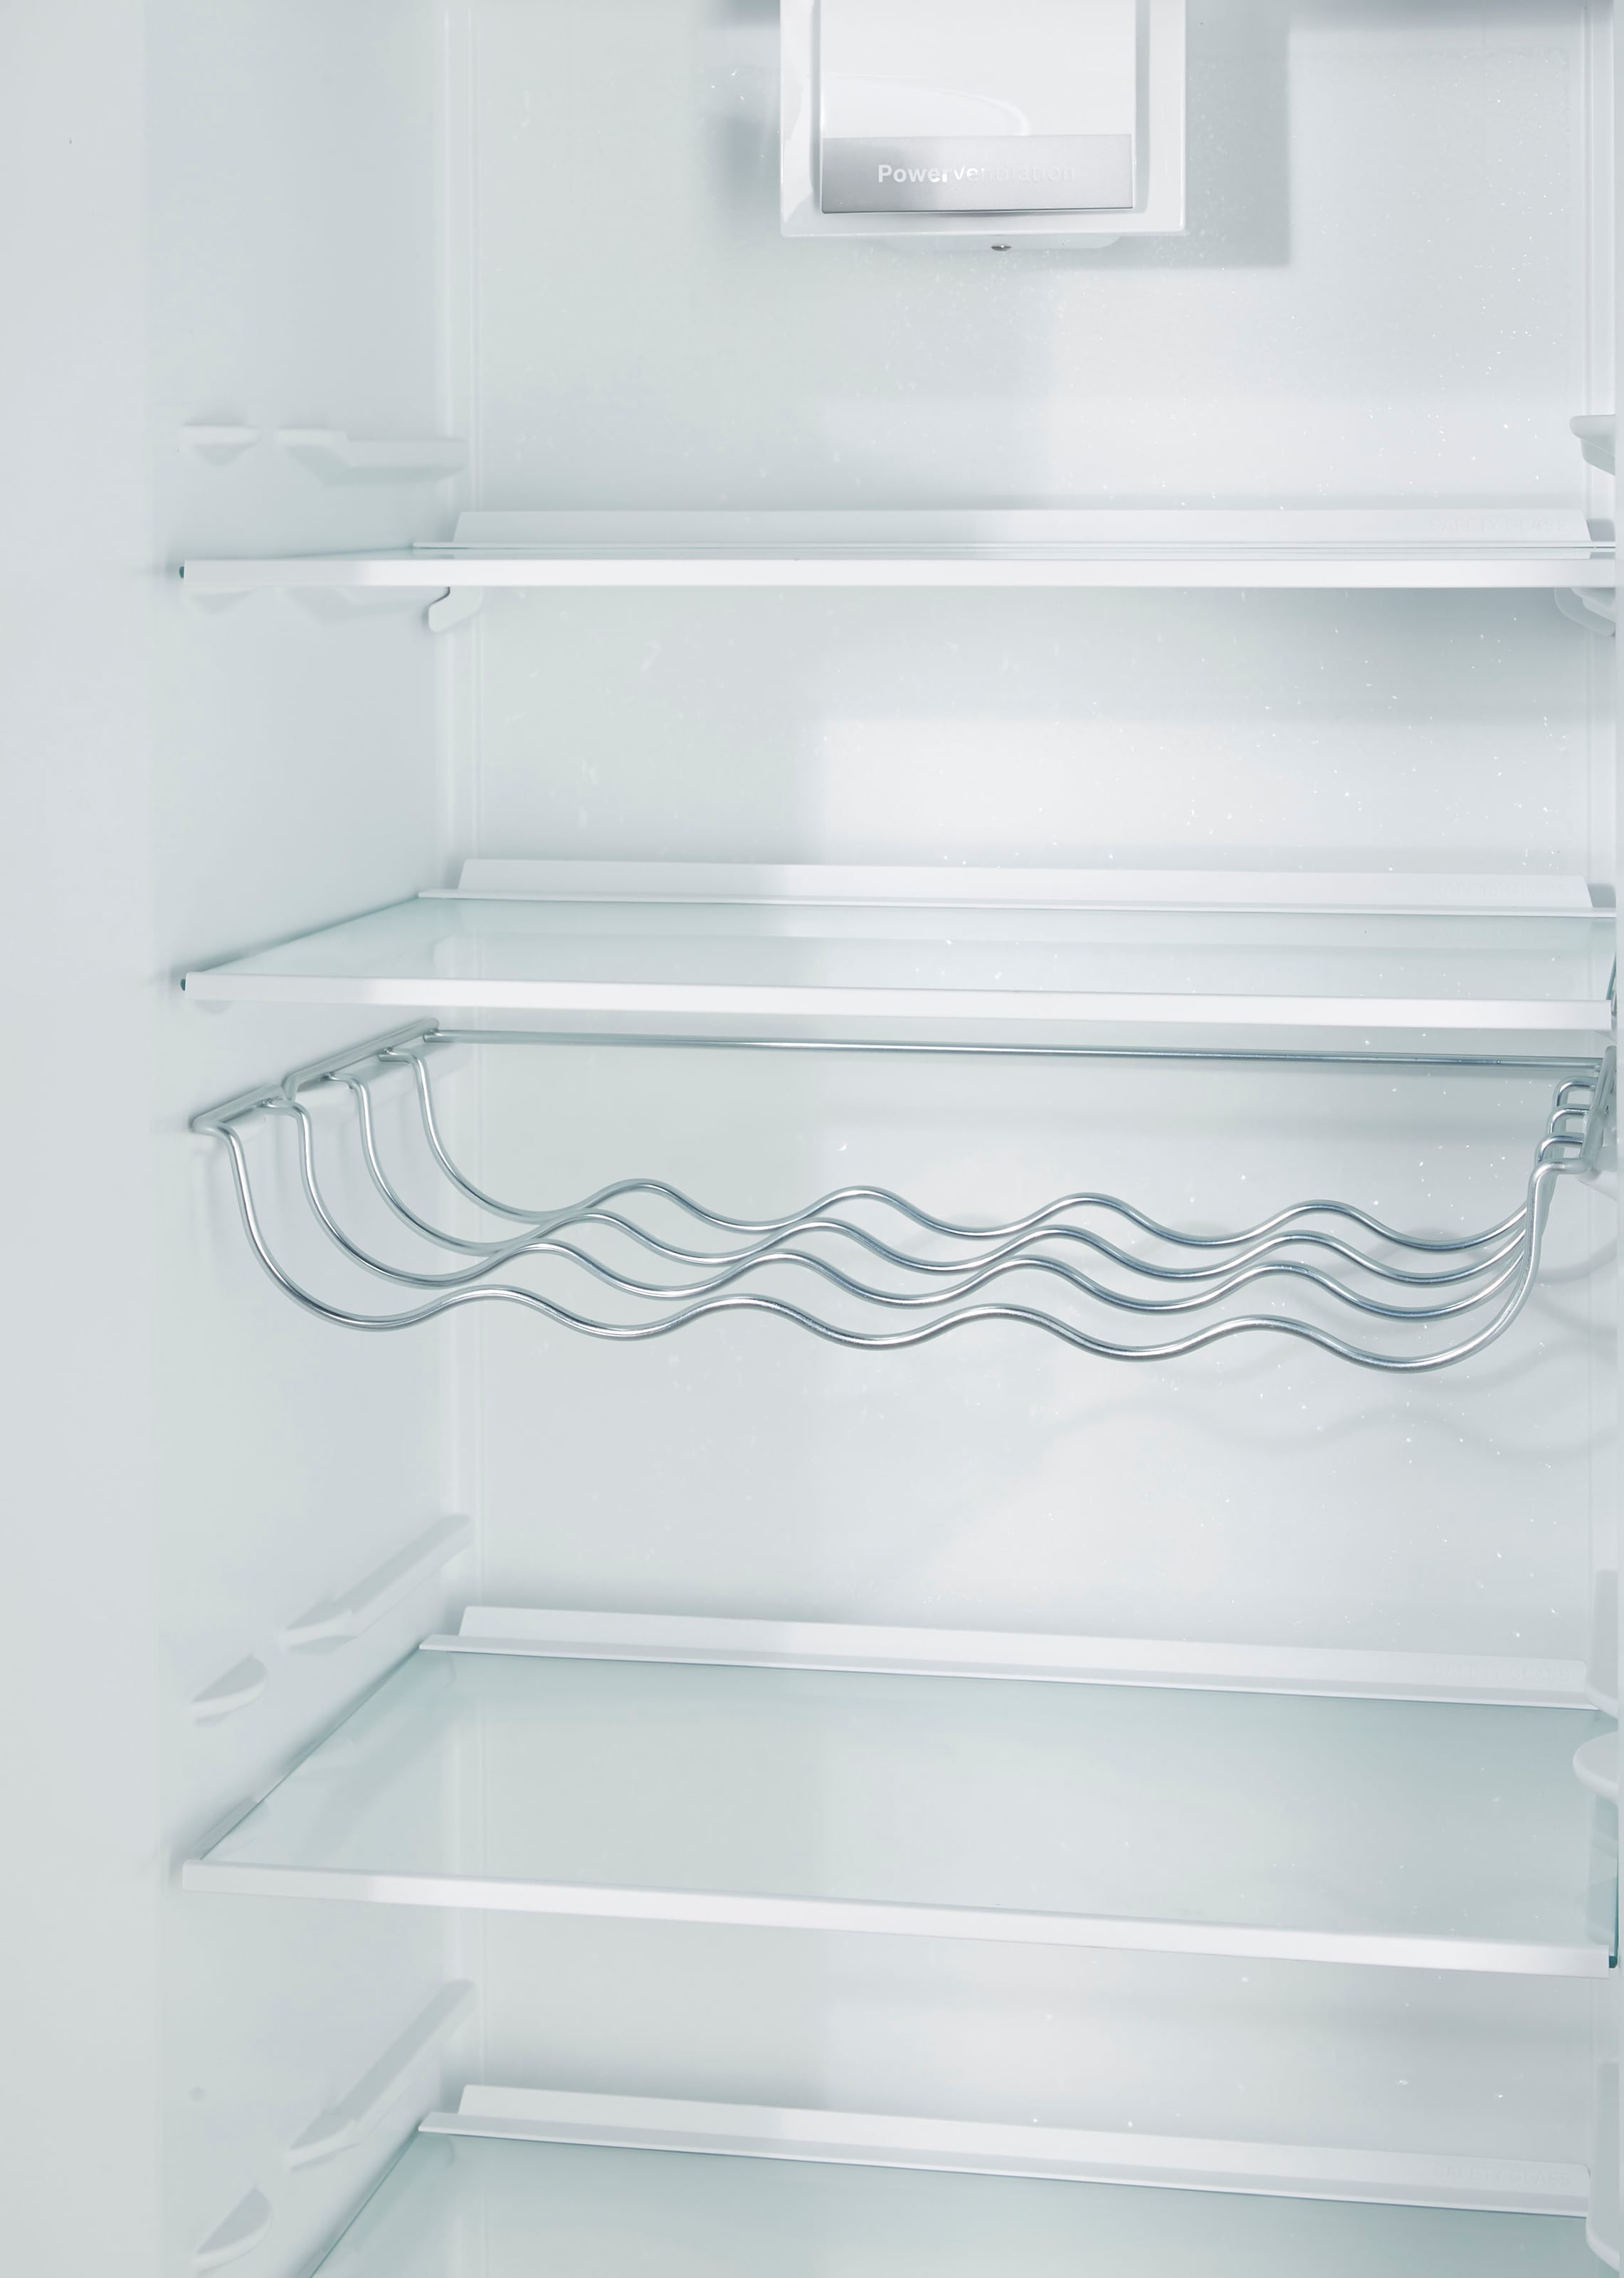 BOSCH Kühlschrank »KSV36VXEP«, KSV36VXEP, 186 cm hoch, 60 cm breit auf  Rechnung bestellen